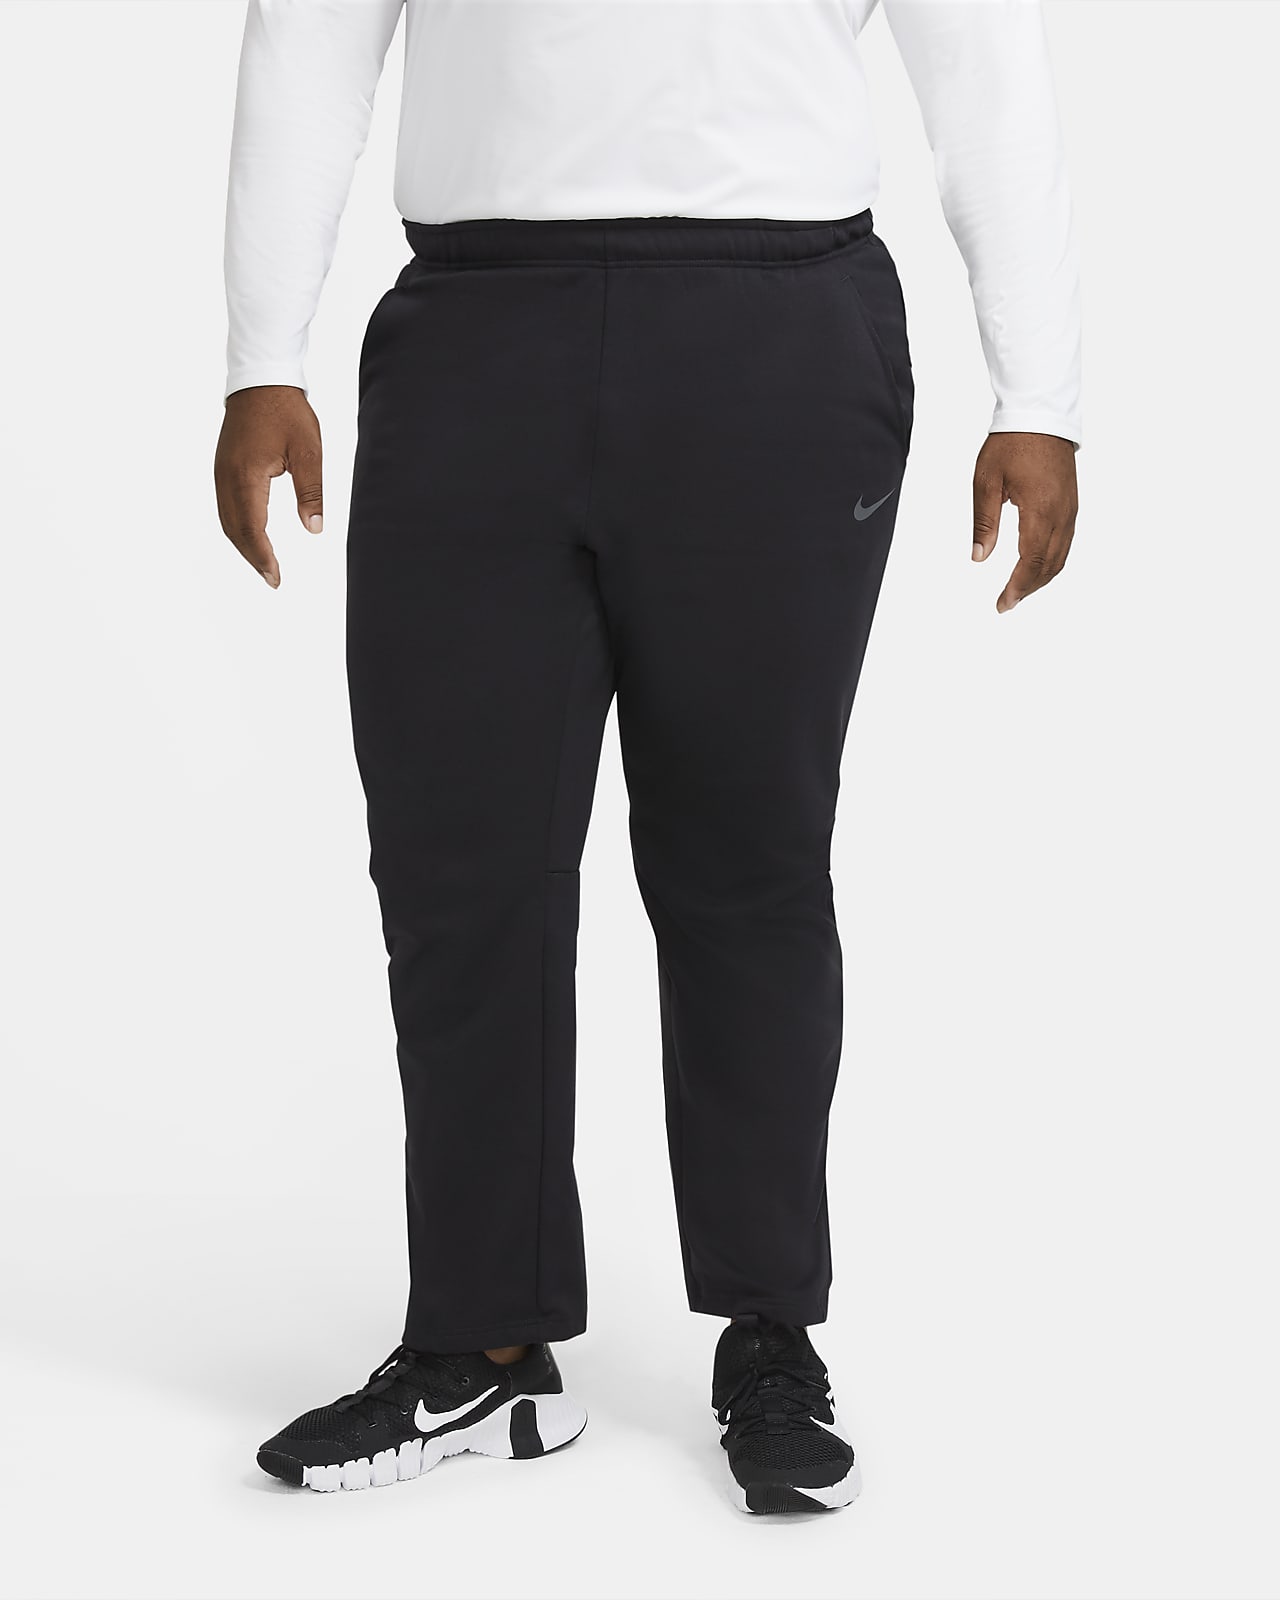 NWT Nike Men's Dri-Fit Warm Up Pants (Medium) Black 897038-010